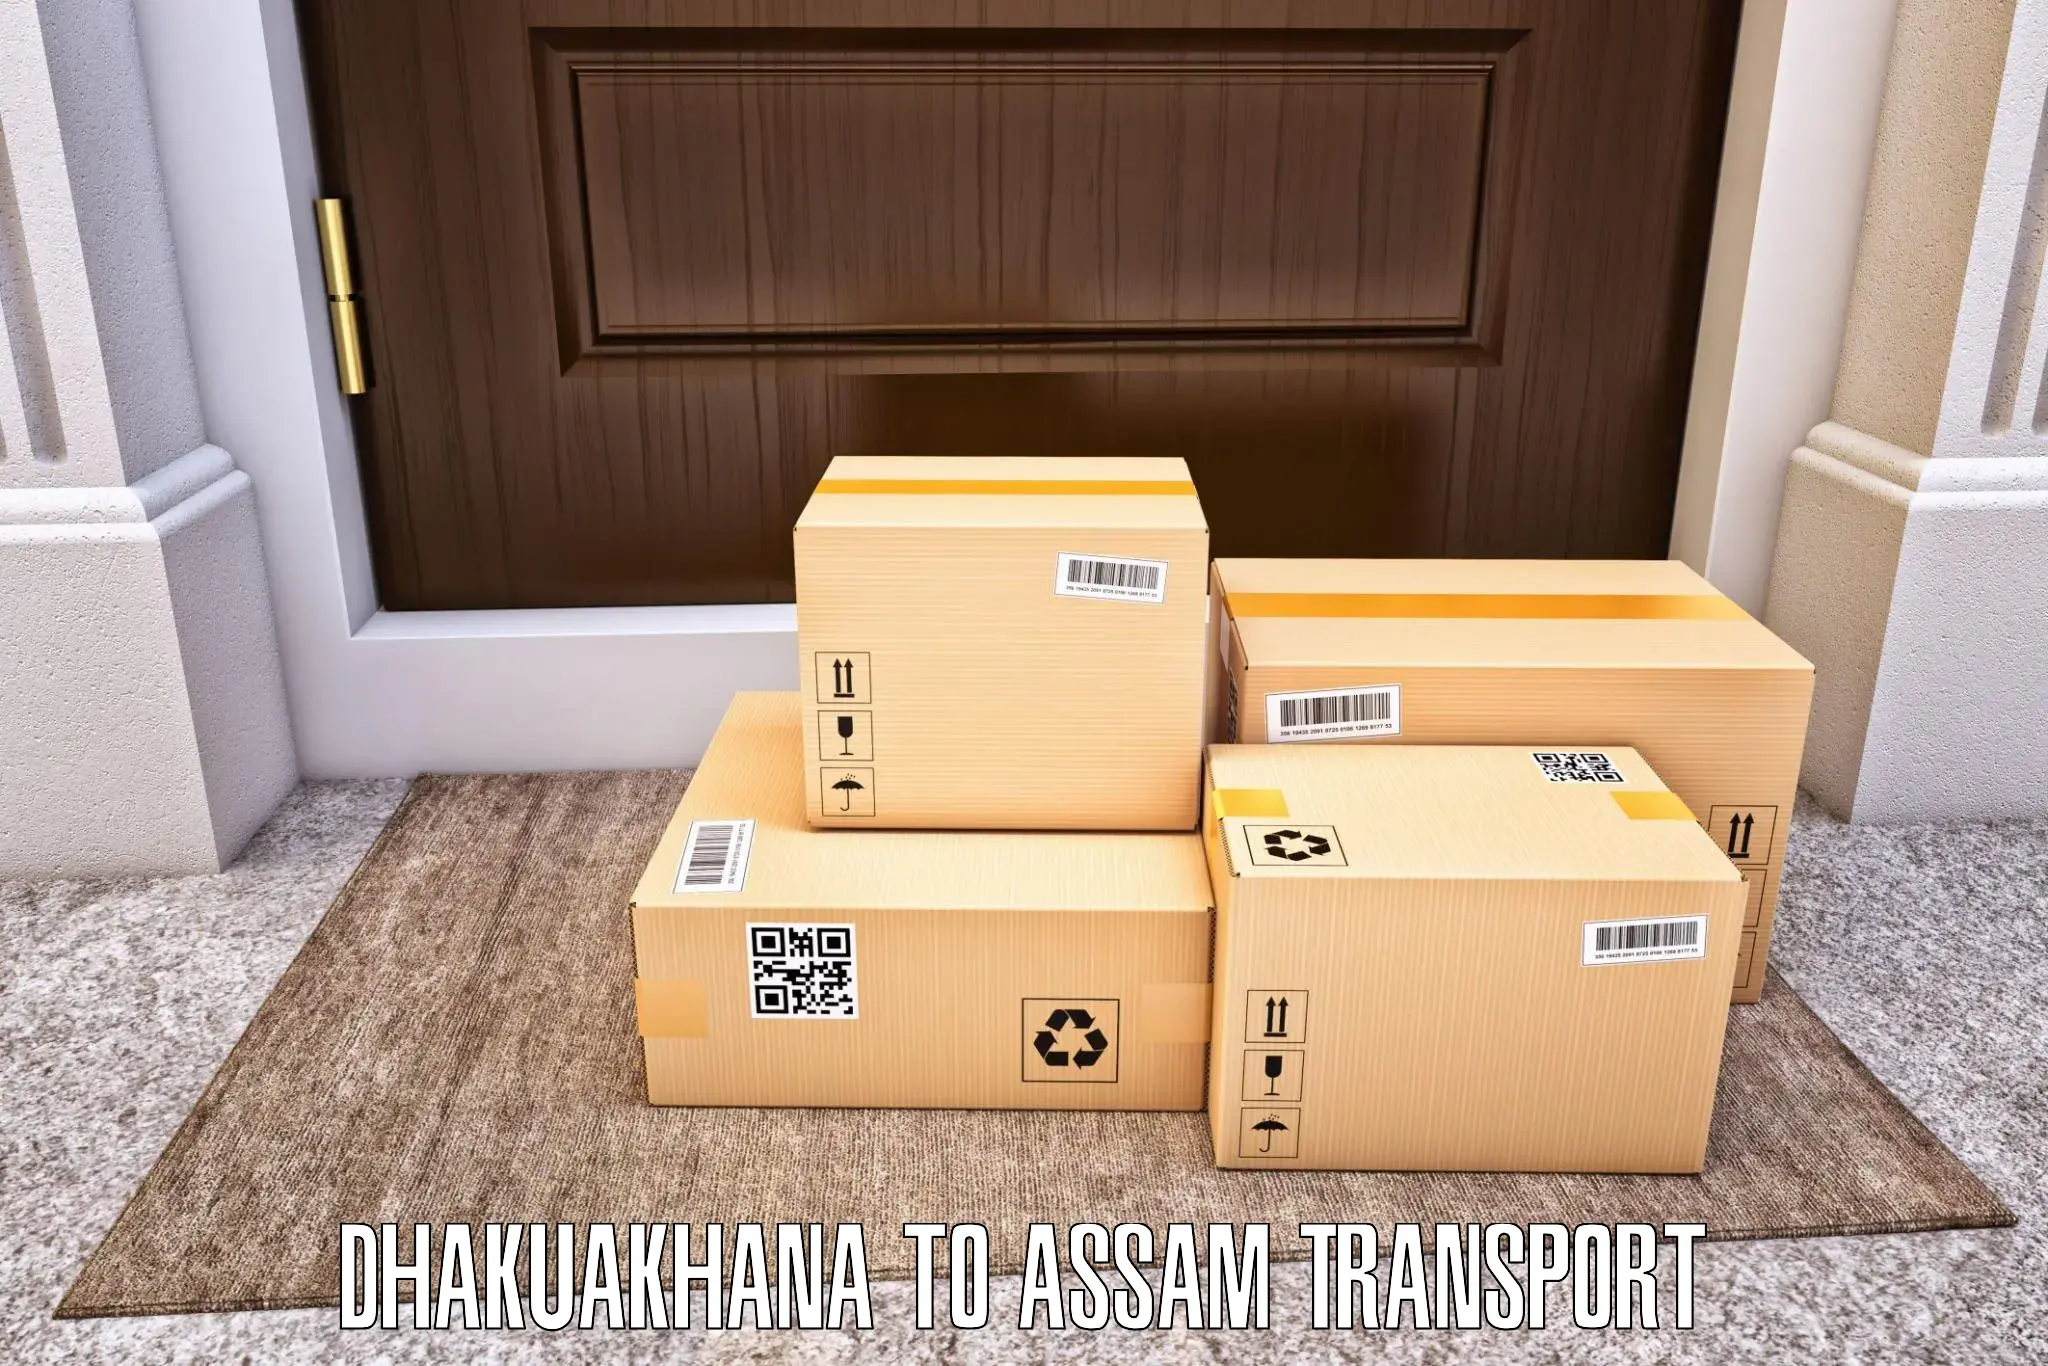 Vehicle parcel service Dhakuakhana to Goalpara